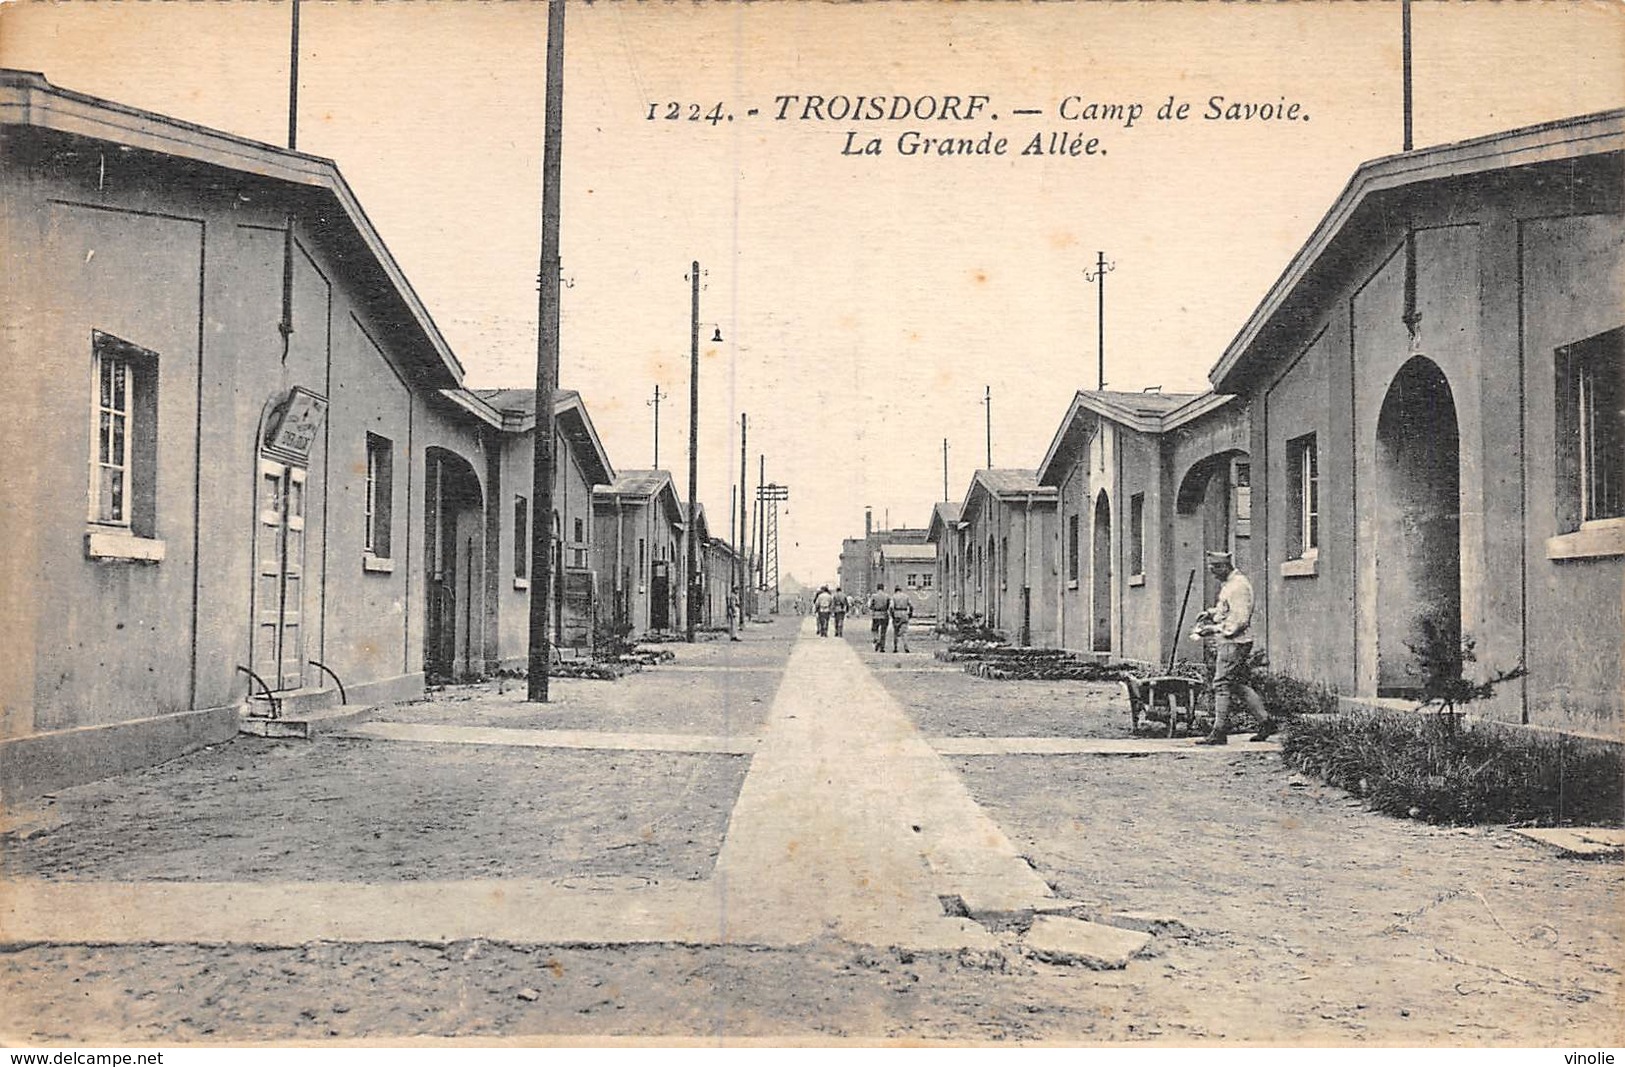 20-4336 : TROISDORF. CAMP MILITAIRE DE SAVOIE. LES BATIMENTS - Troisdorf